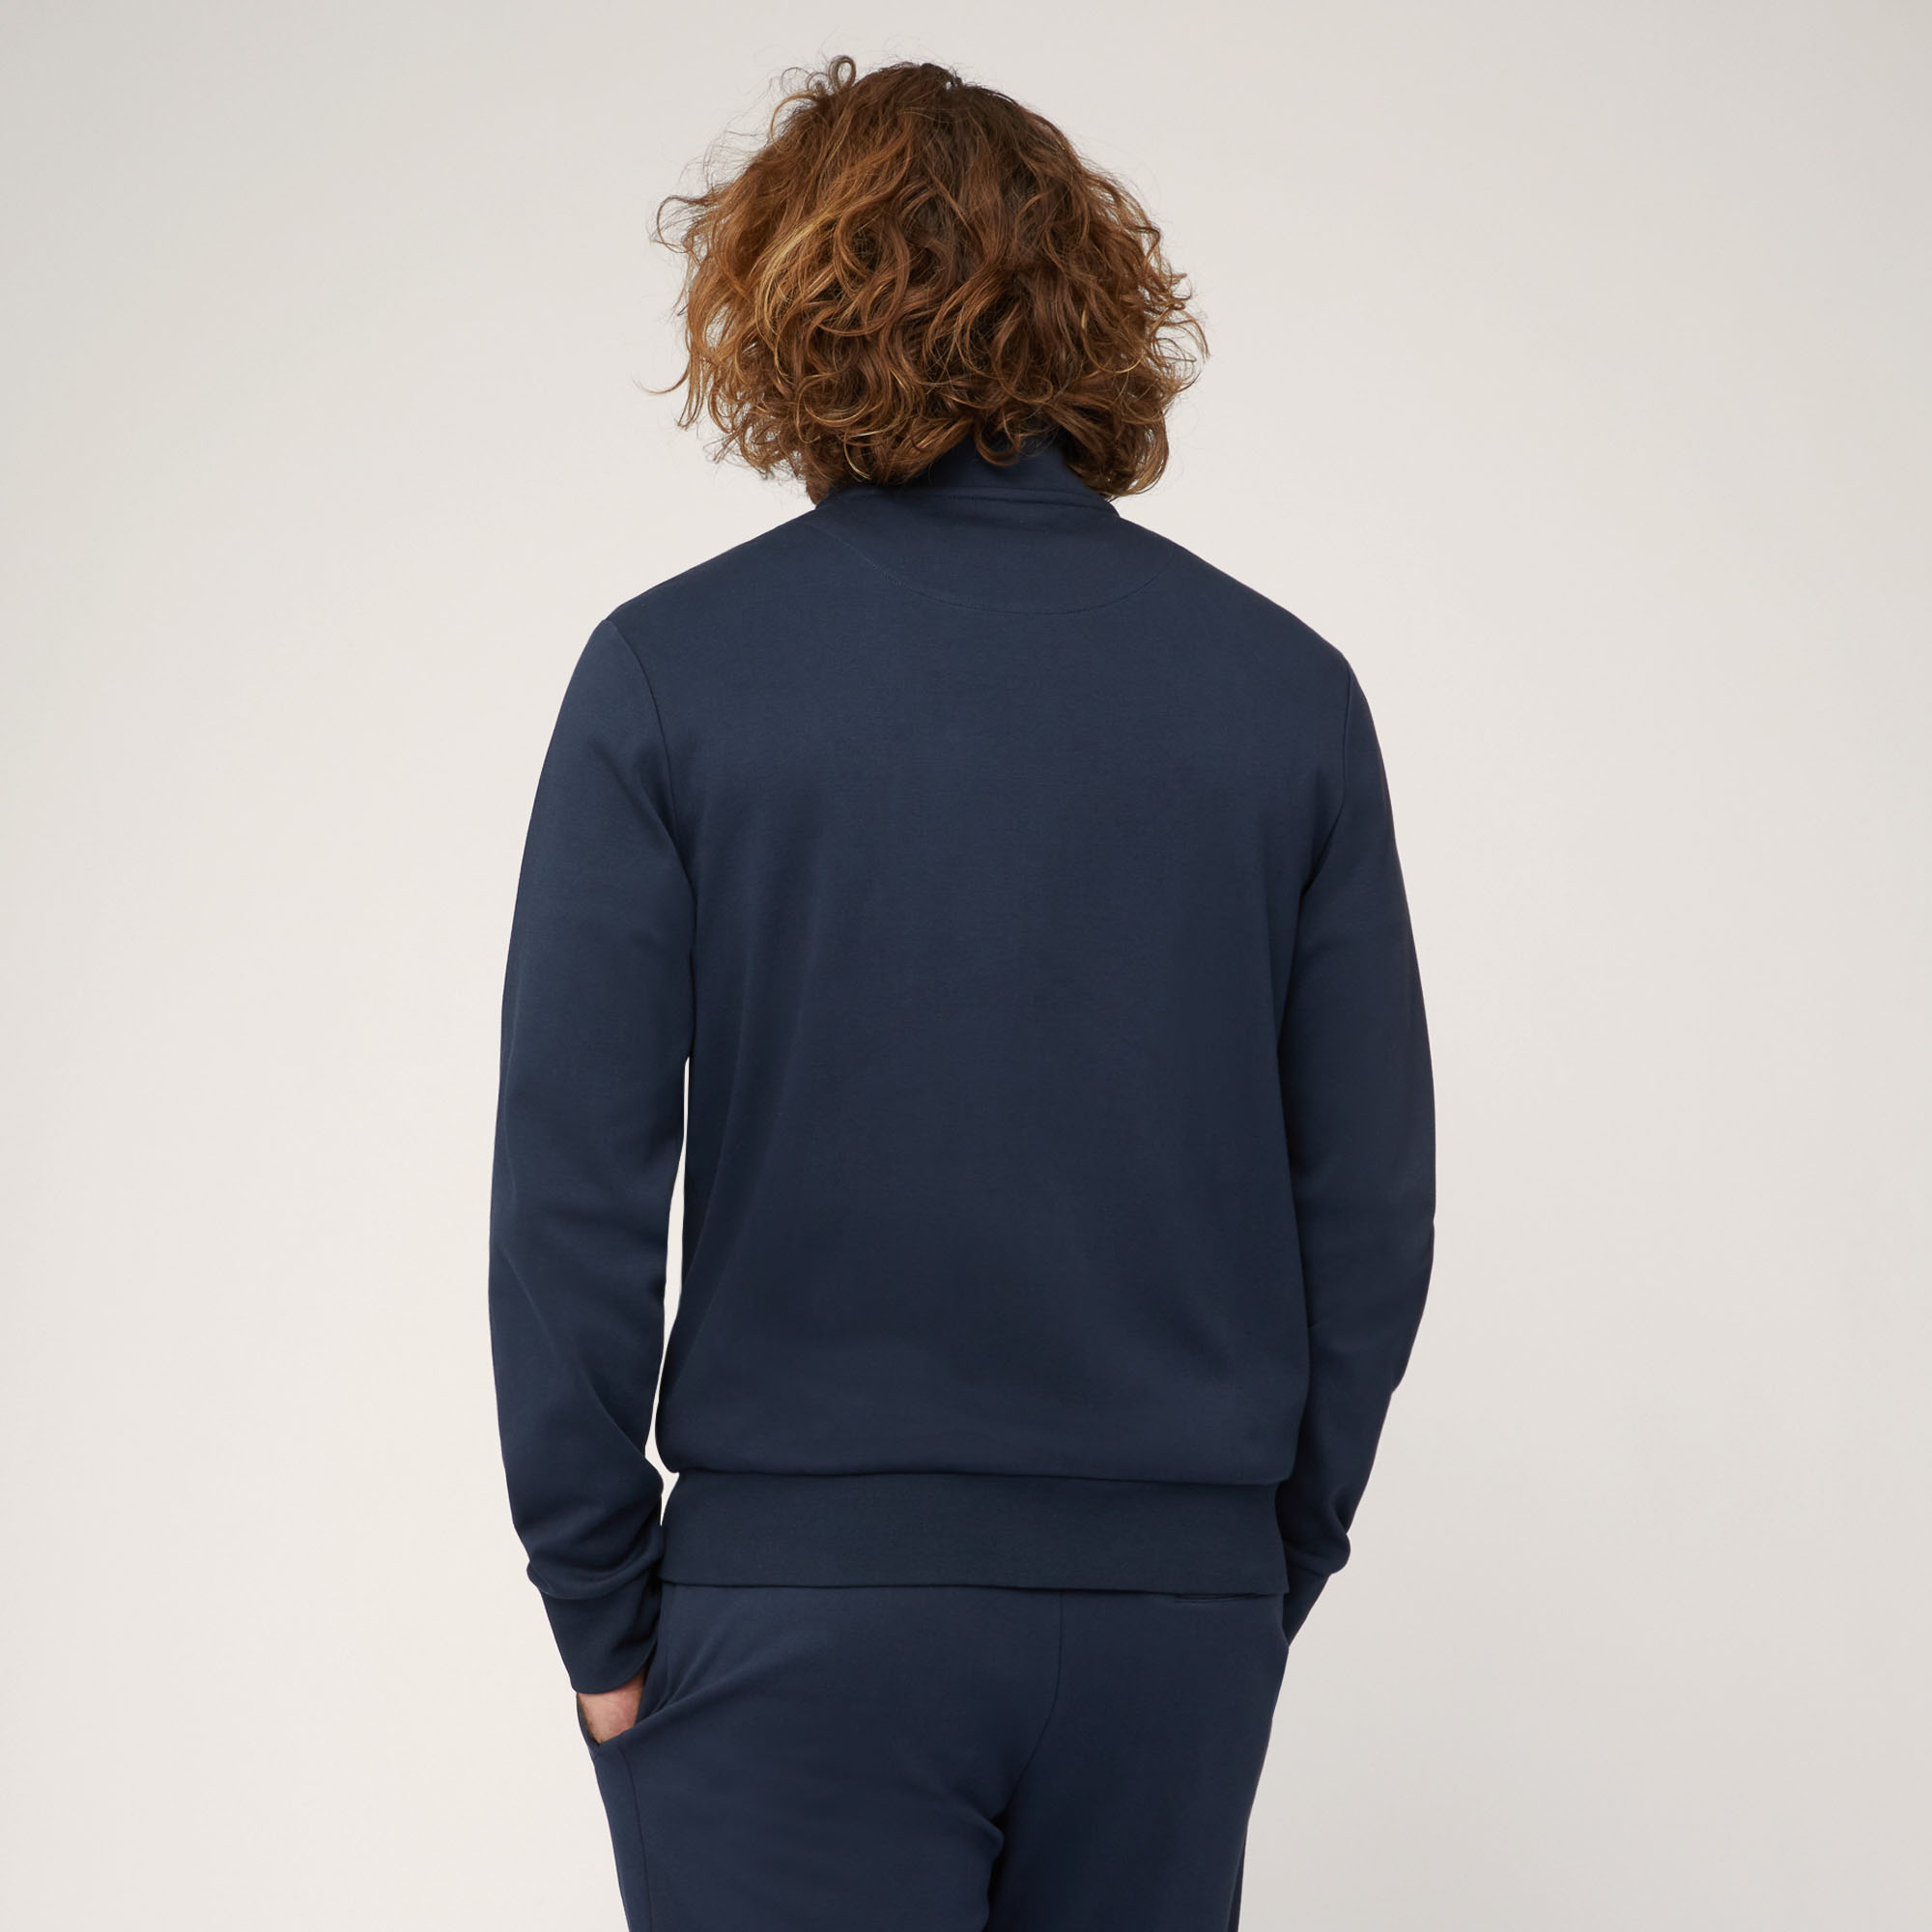 Sweatshirt aus Baumwolle mit durchgehendem Reißverschluss und verschweißten Details, Blau, large image number 1